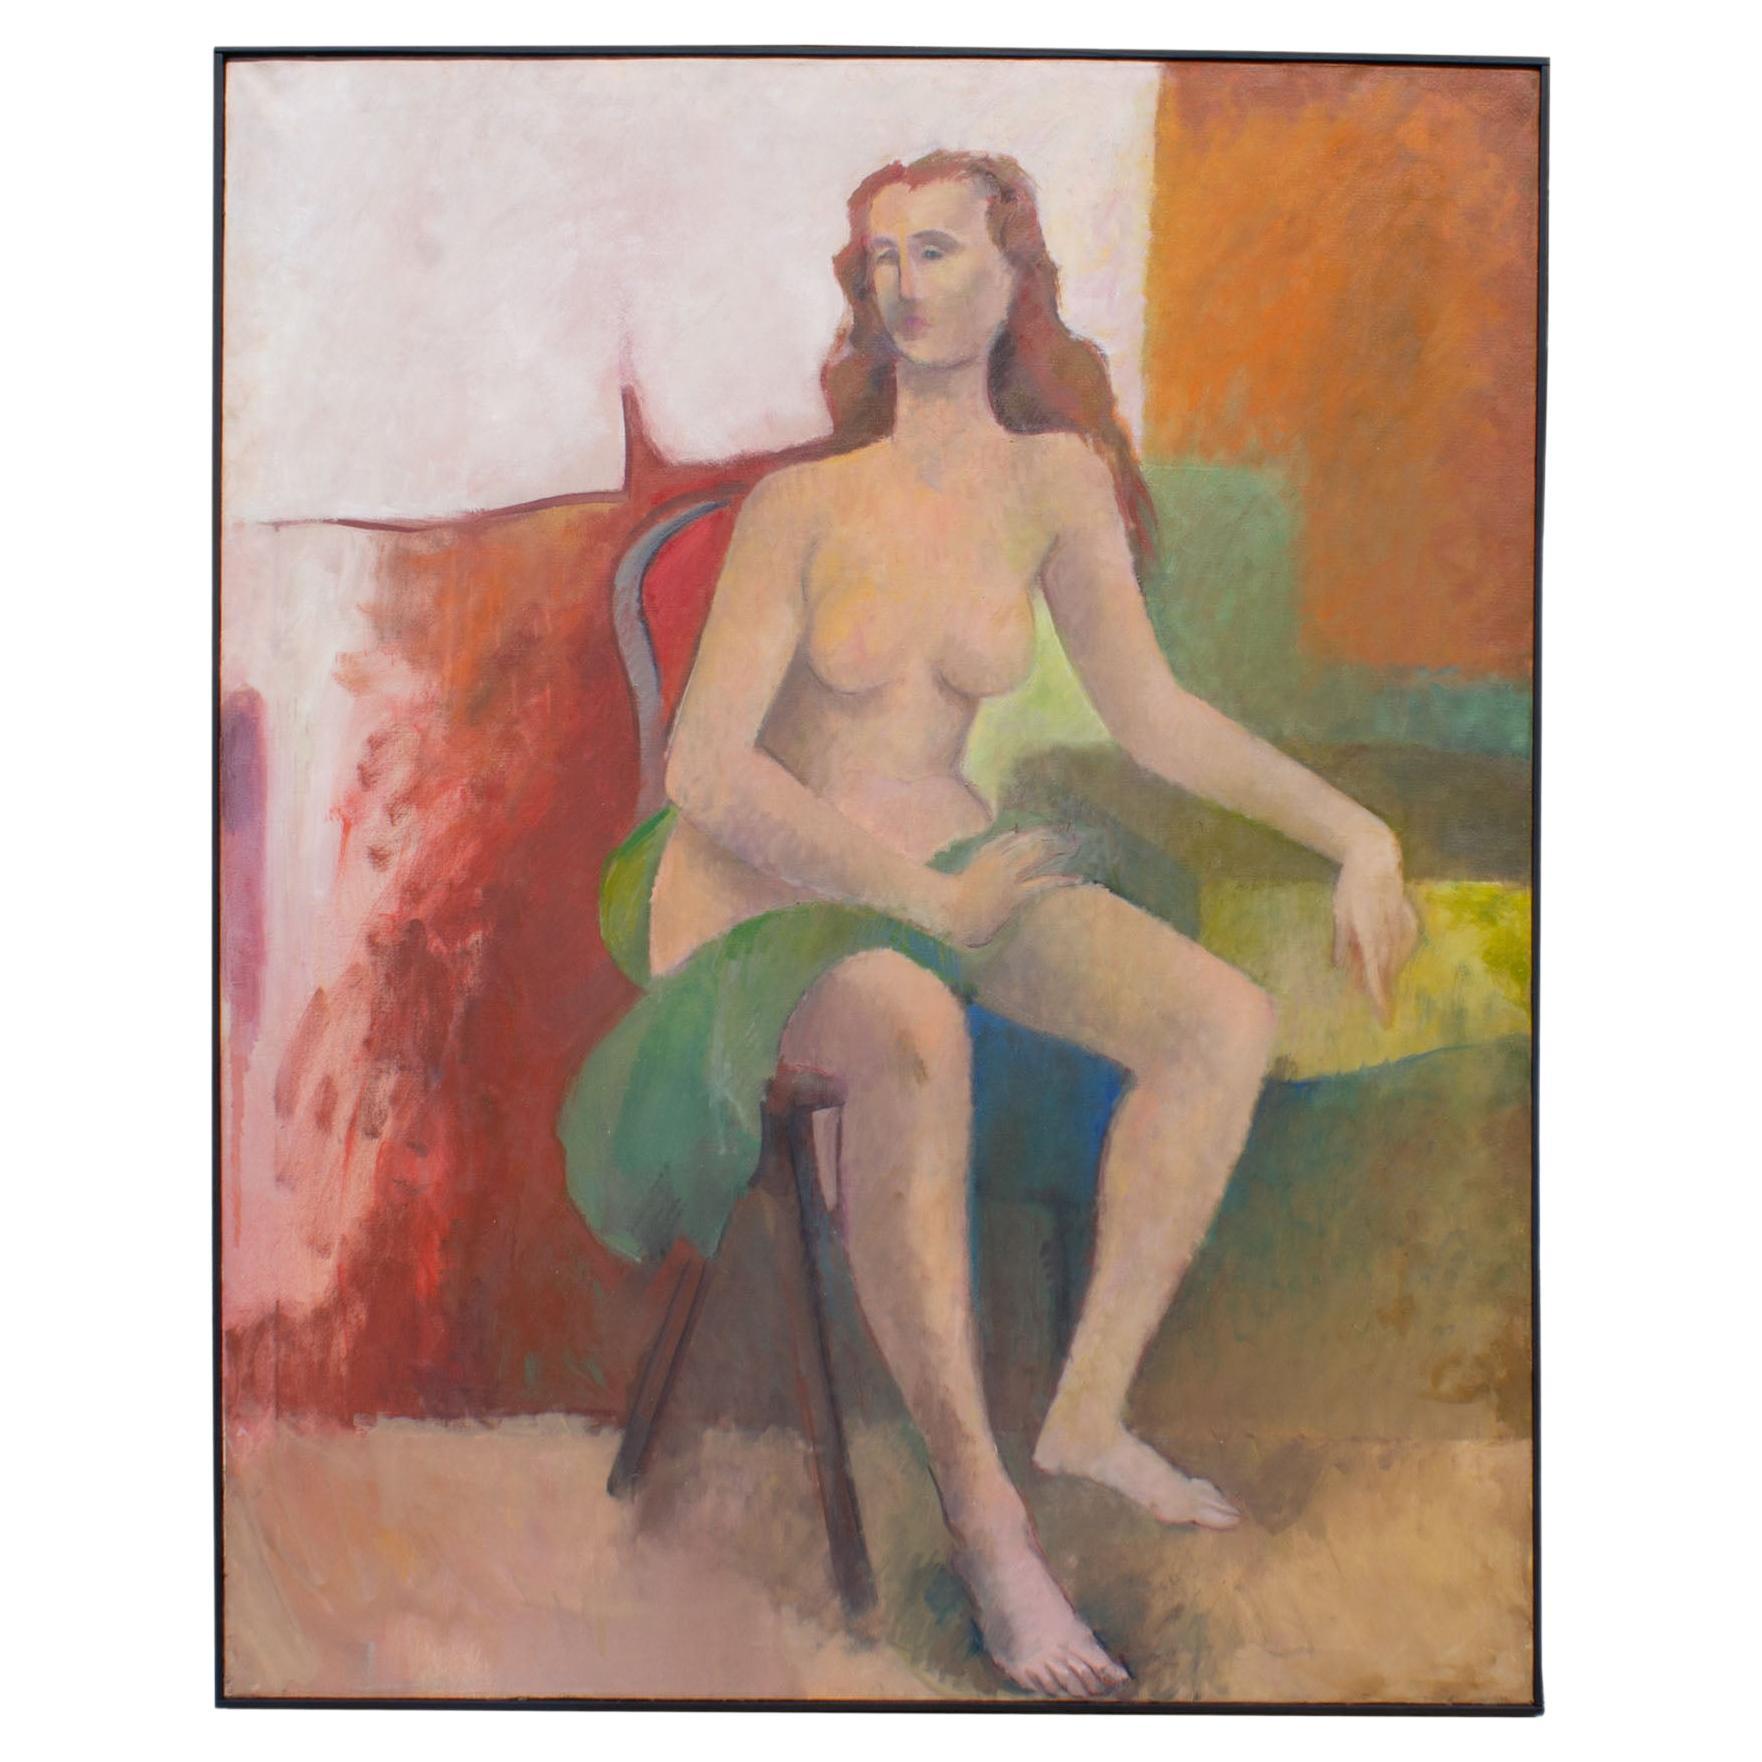 Walter Stomps Signé 1959 Nu assis Huile sur toile Peinture abstraite